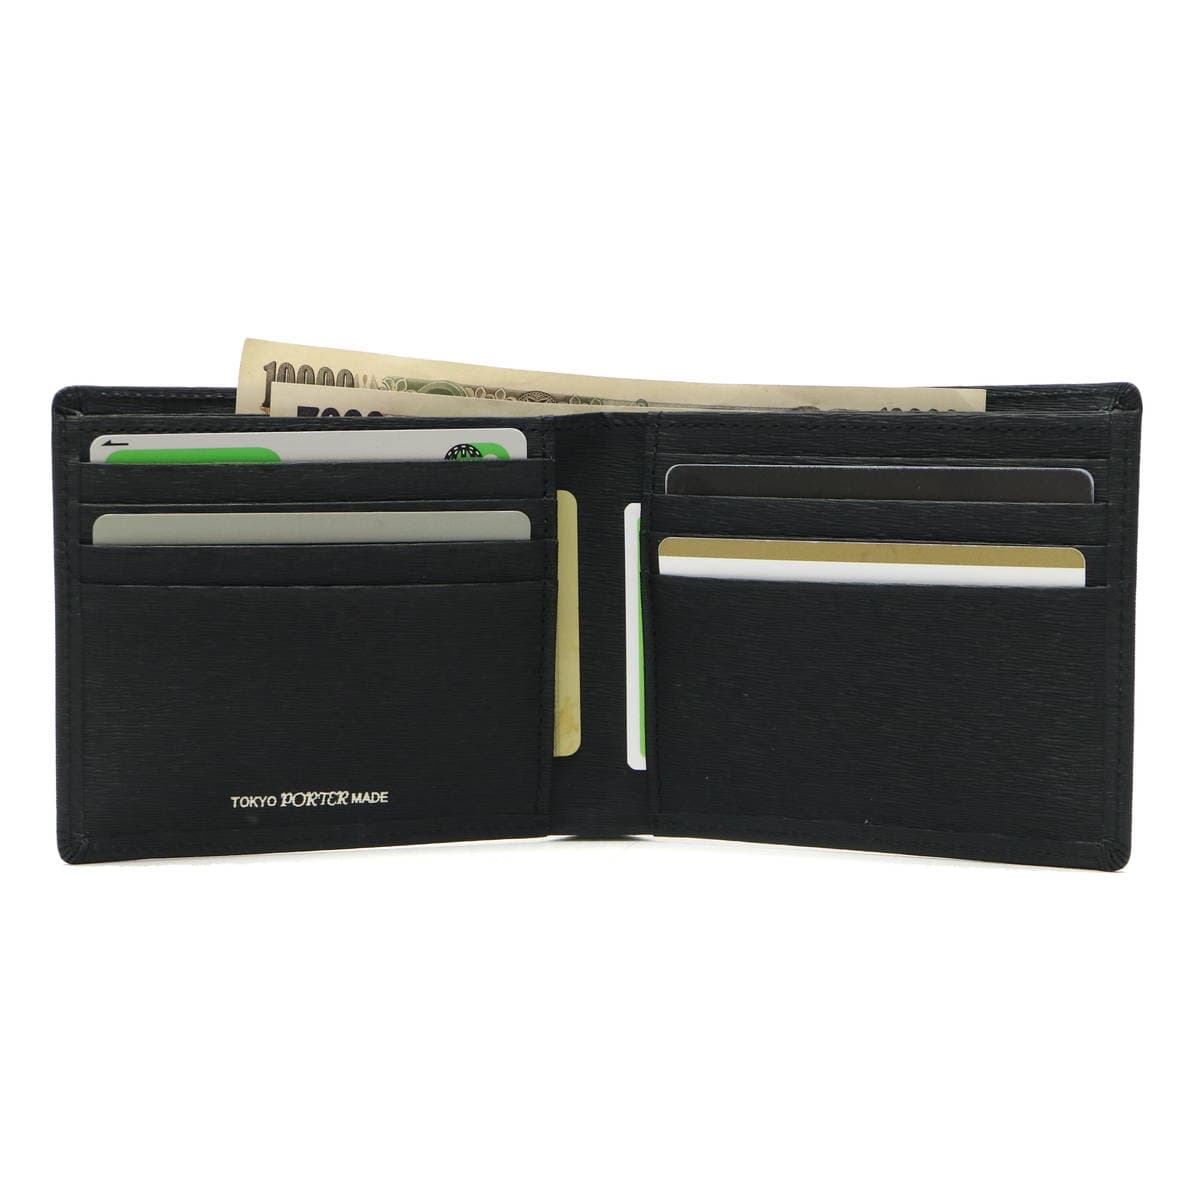 【新品未使用】PORTER カレント 二つ折り財布 最新型番